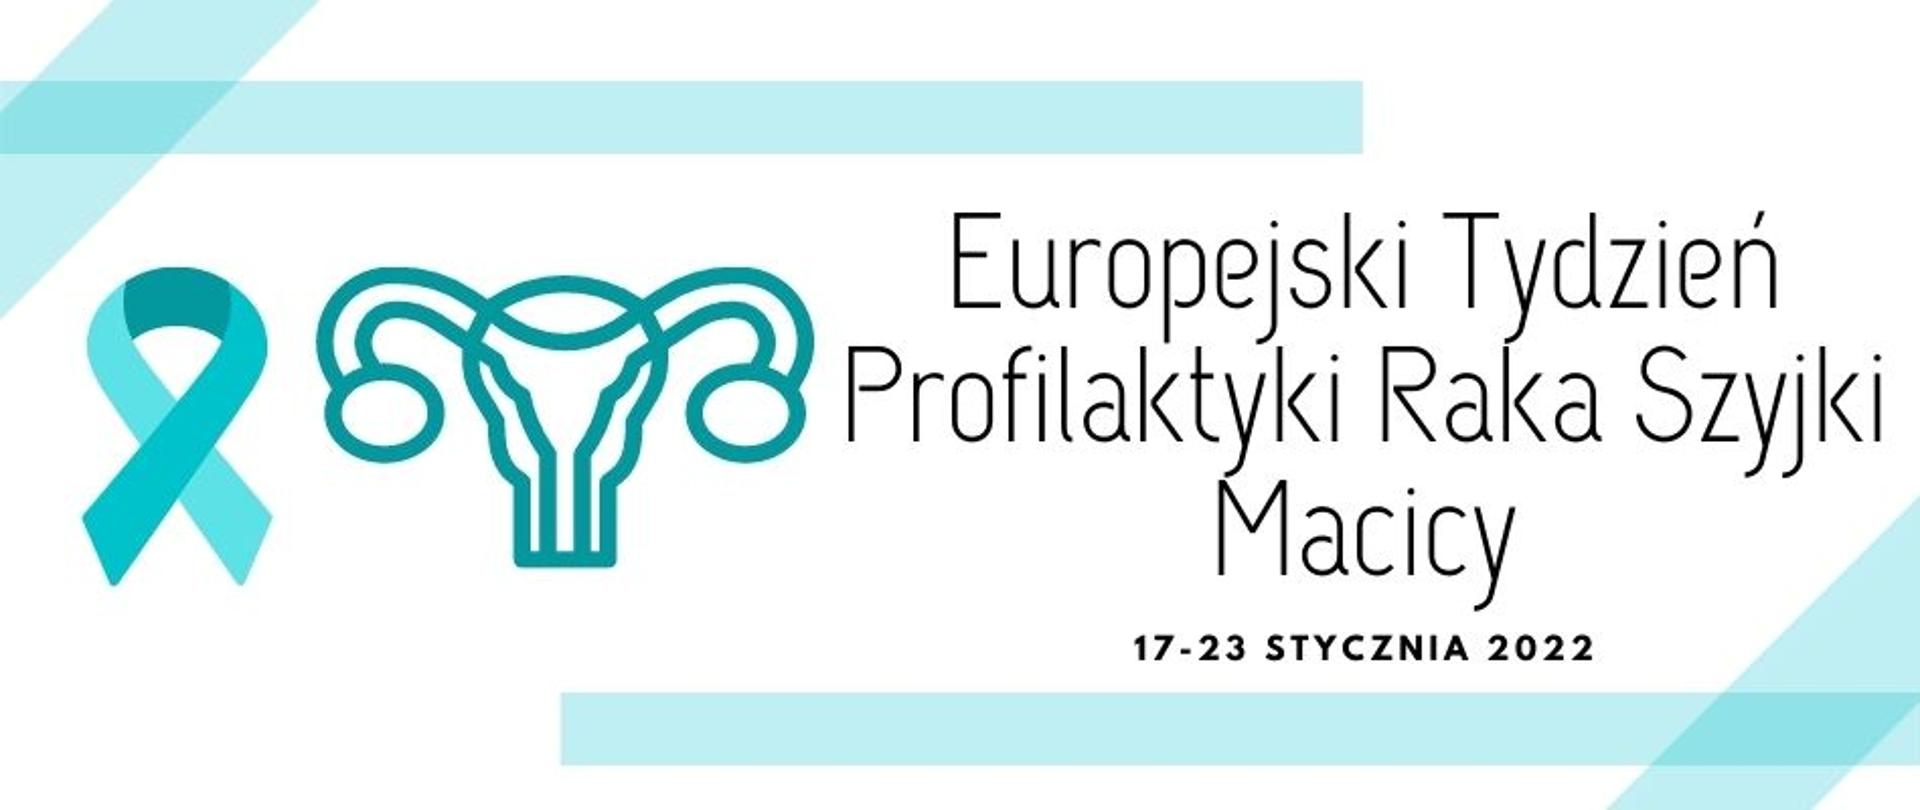 Europejski Tydzień Profilaktyki Raka Szyjki Macicy 17-23 stycznia 2022 r. 